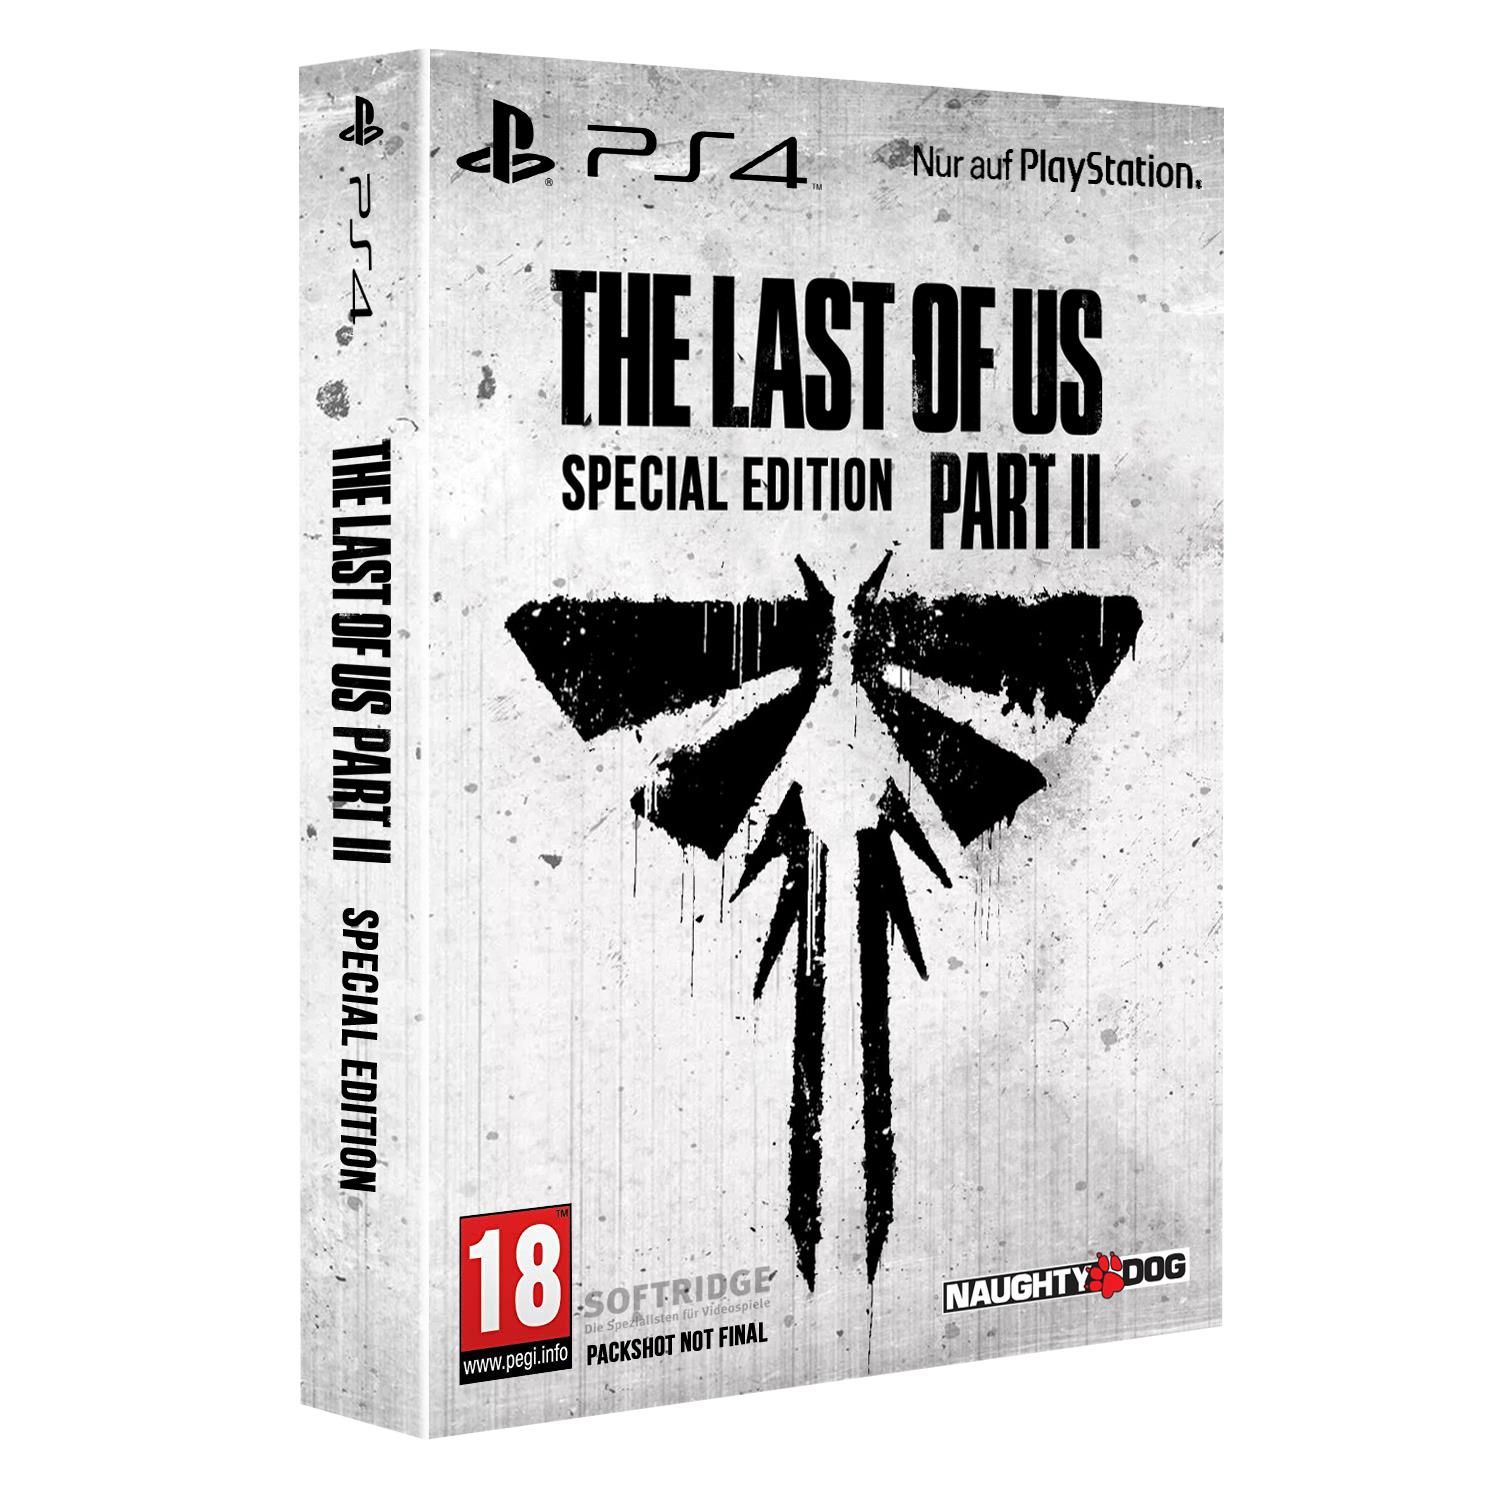 Обложка специального издания The Last of Us Part II
Источник: Softridge